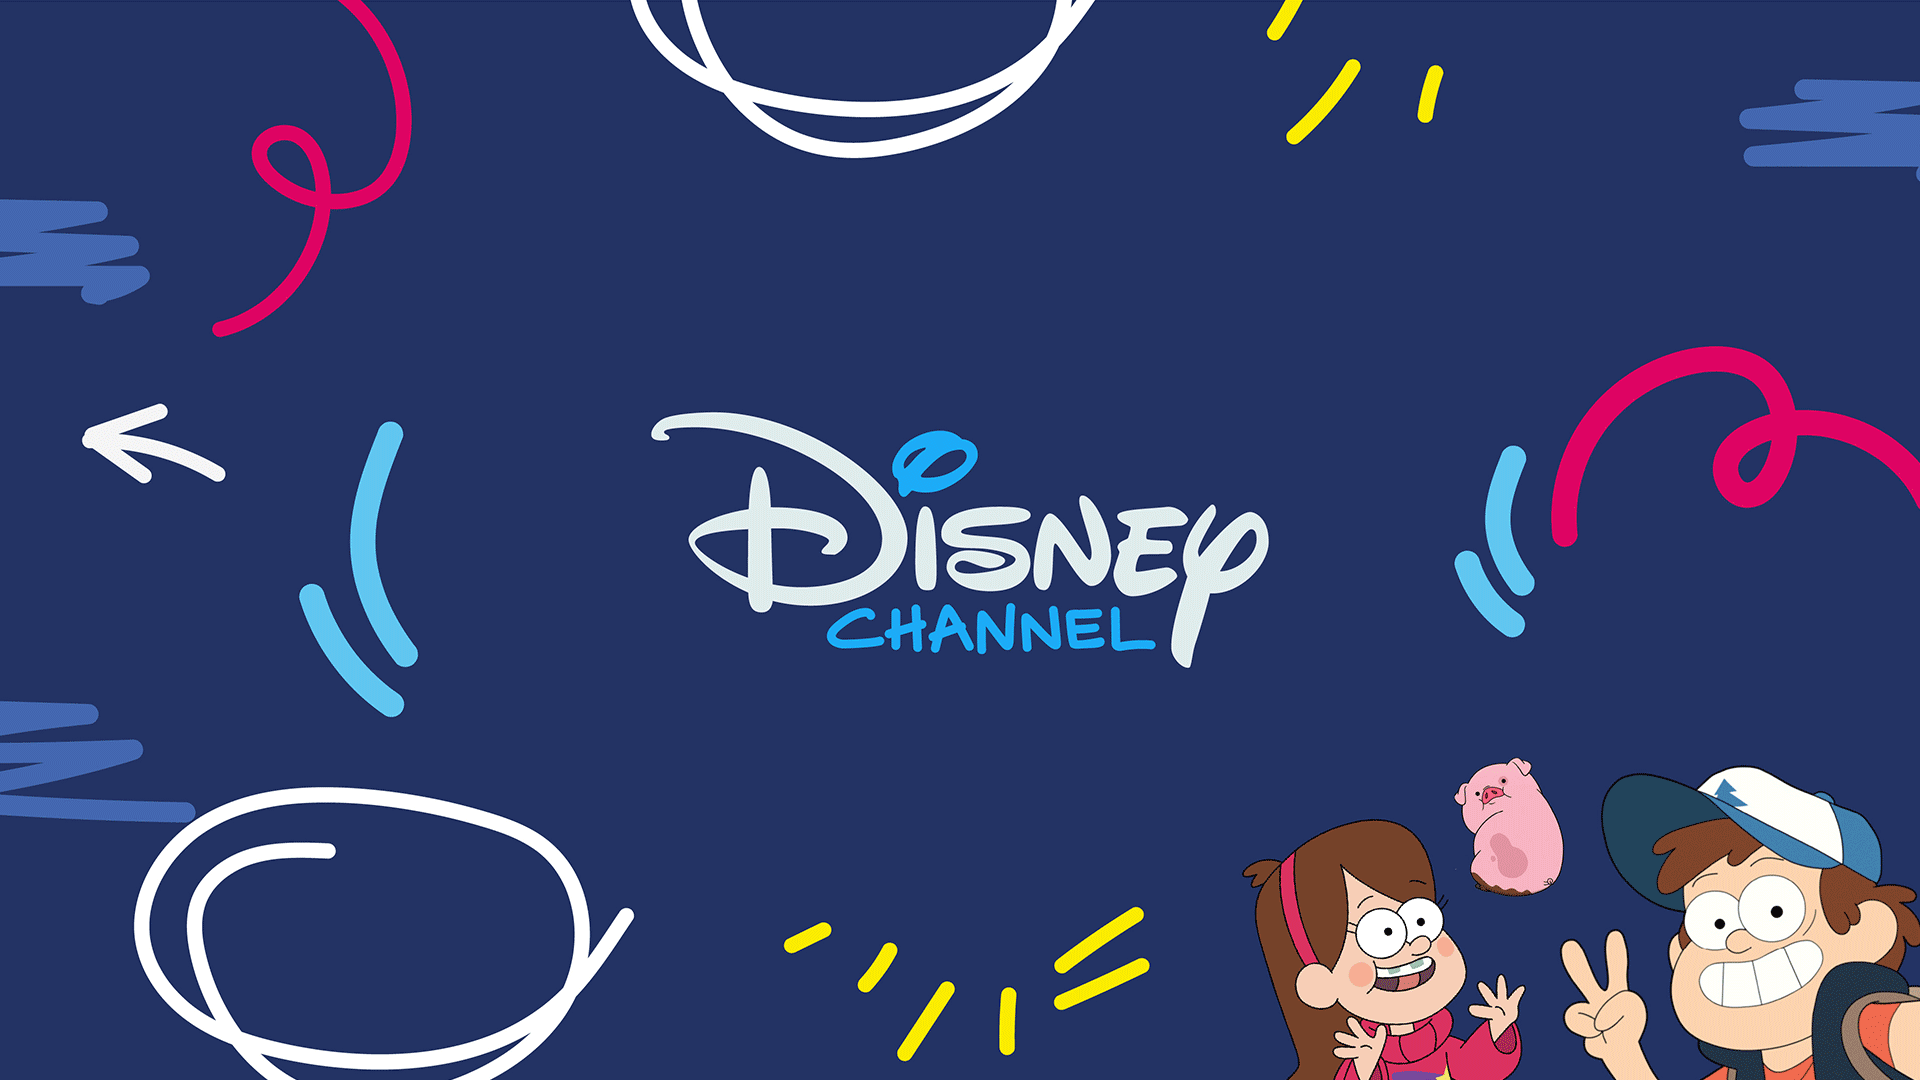 迪士尼頻道Disney Channel 更新LOGO，移除米老鼠大耳朵輪廓 8